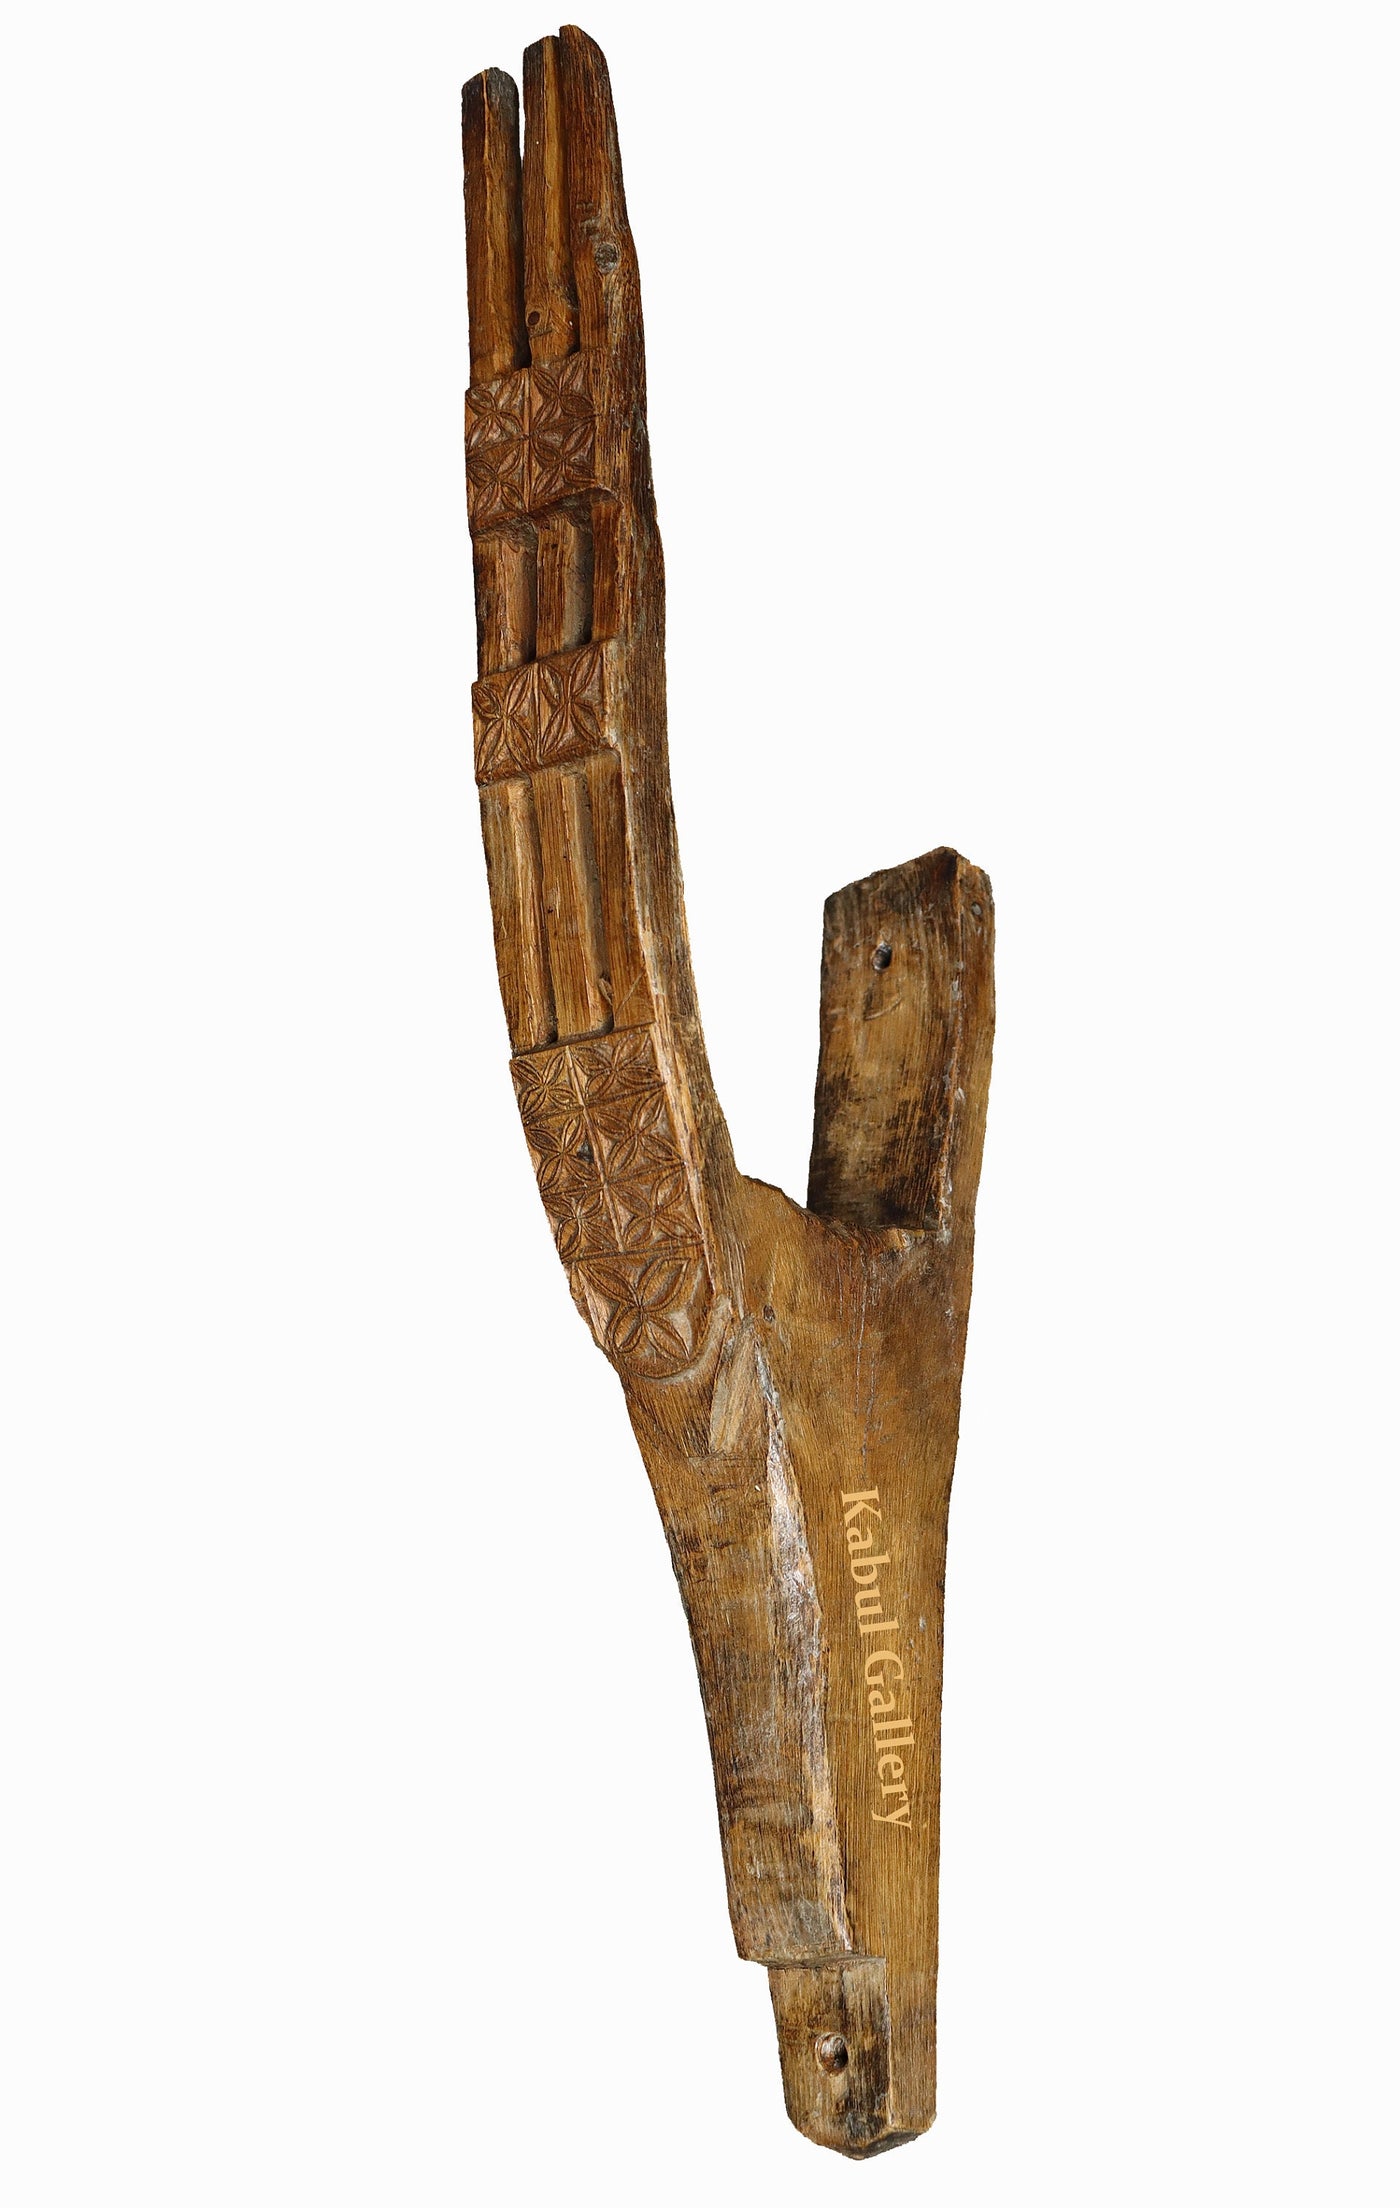 sehr selten und einmalige antike Holzhaken Hacken aus Afghanistan Nuristan,um anfang 19.J.h.   22/B  Orientsbazar   